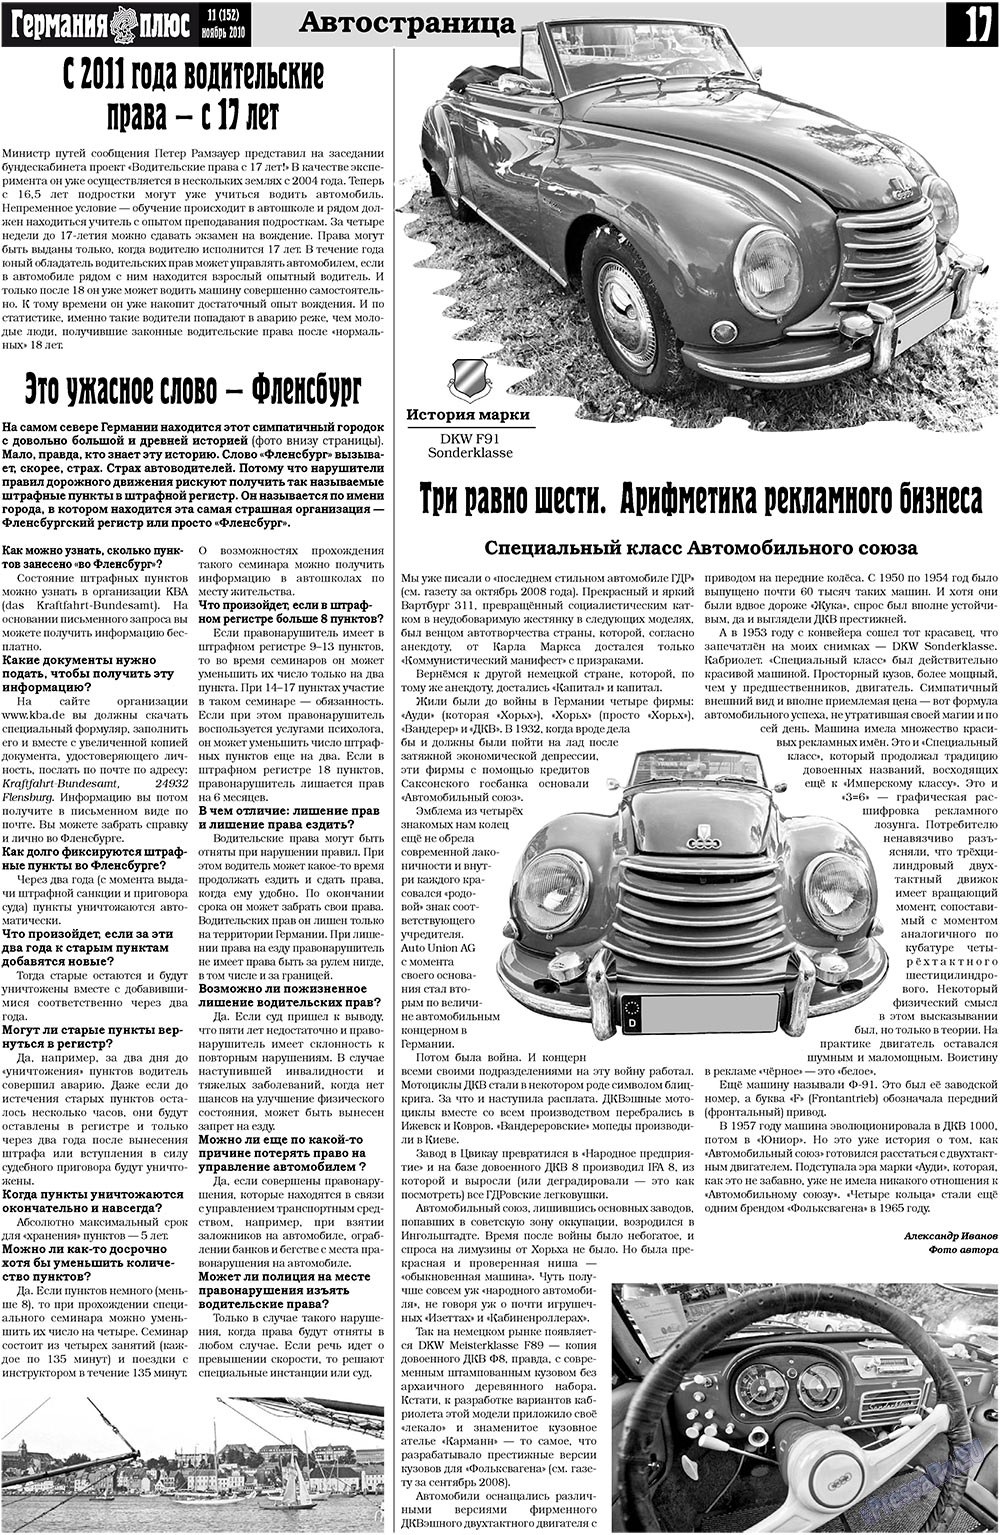 Германия плюс (газета). 2010 год, номер 11, стр. 17